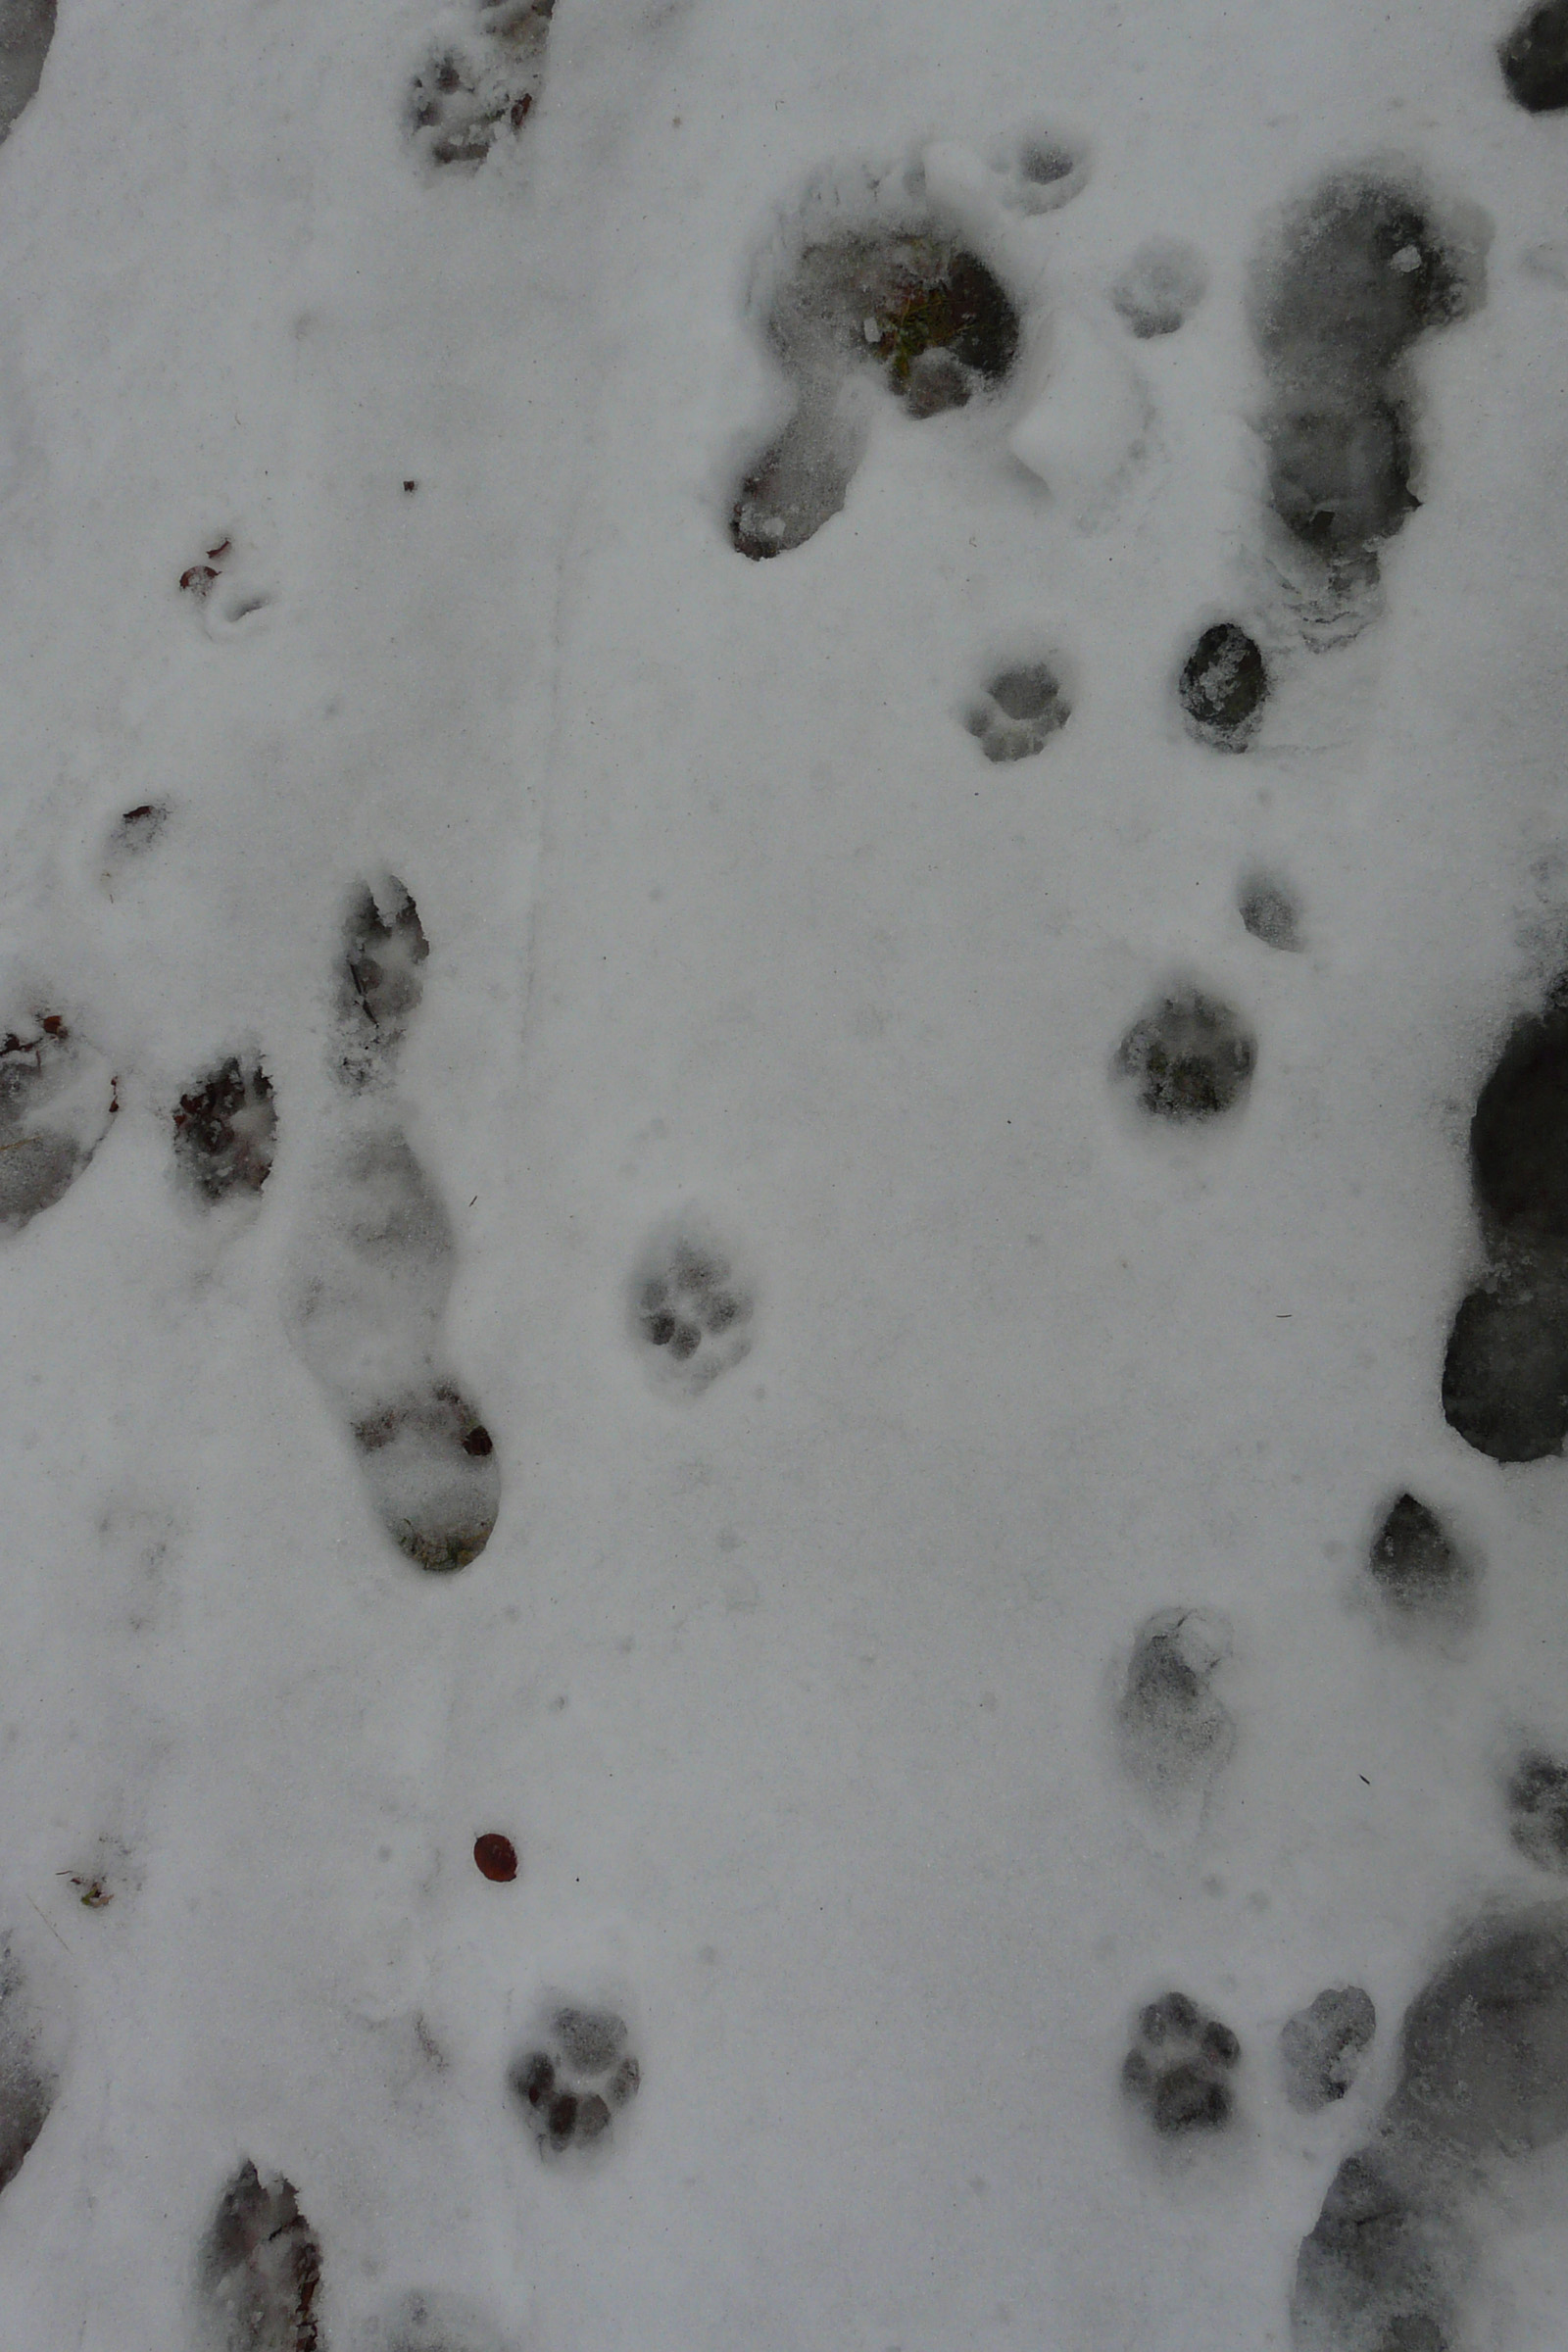 66_Tající stopní dráha rysa ostrovida ve zbytcích sněhu, autor_Barbora Telnarová